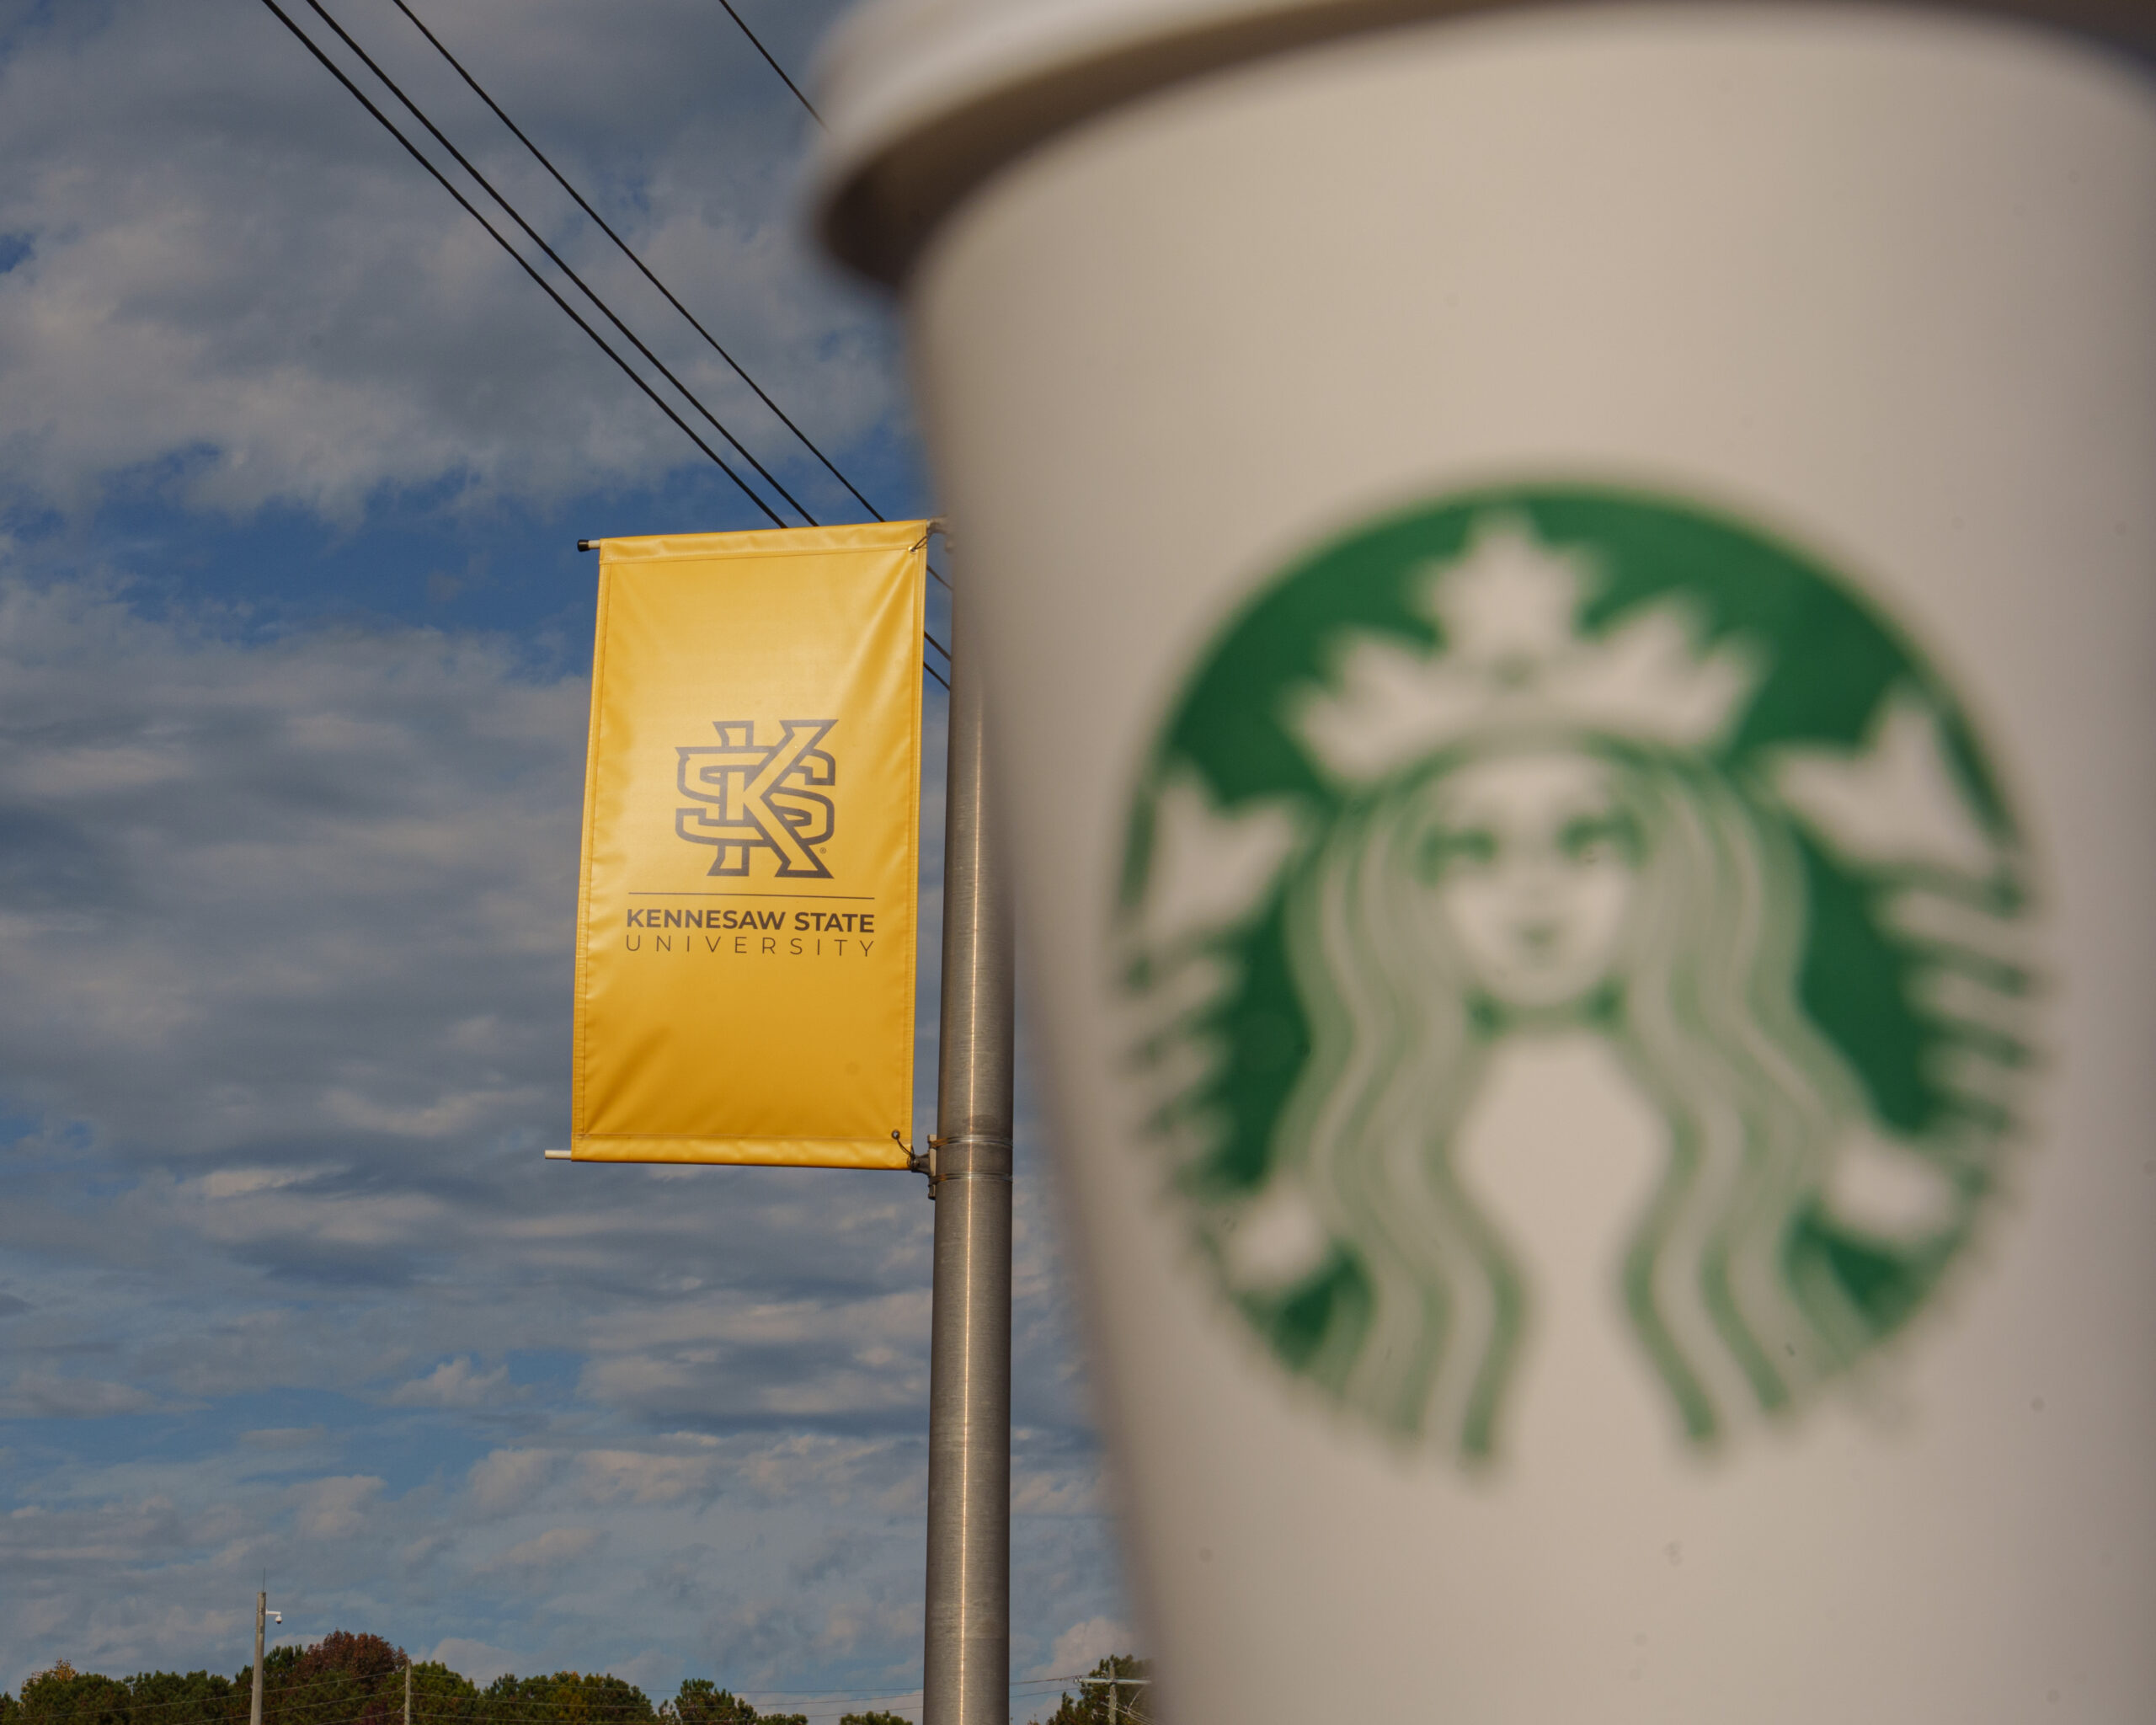 Carmichael Student Center considered for new Starbucks